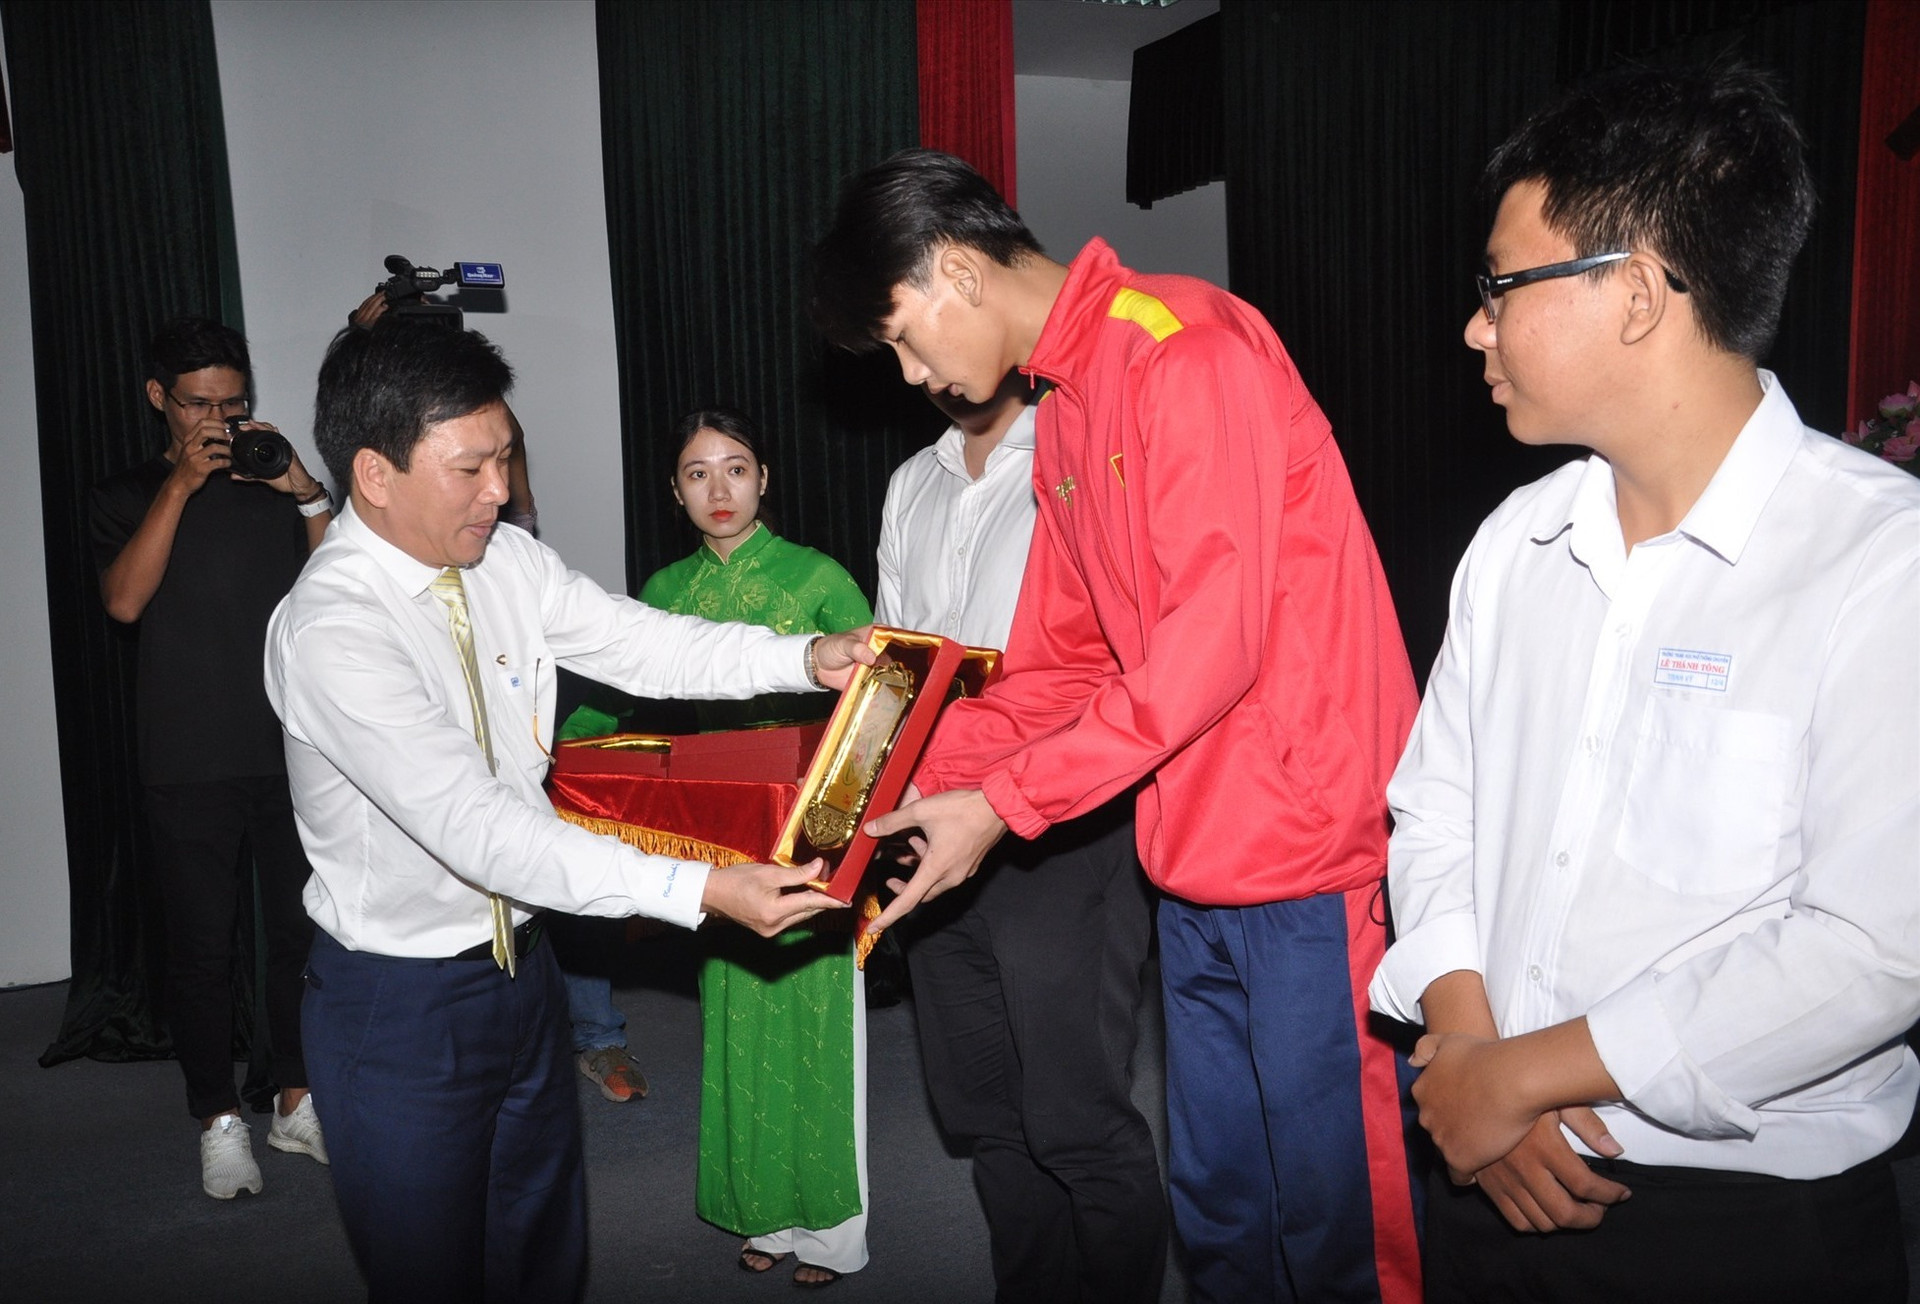 Giám đốc Vietcombank Quảng Nam Võ Văn Đức cho vận động viên Hoàng Thanh Long. Ảnh: X.P